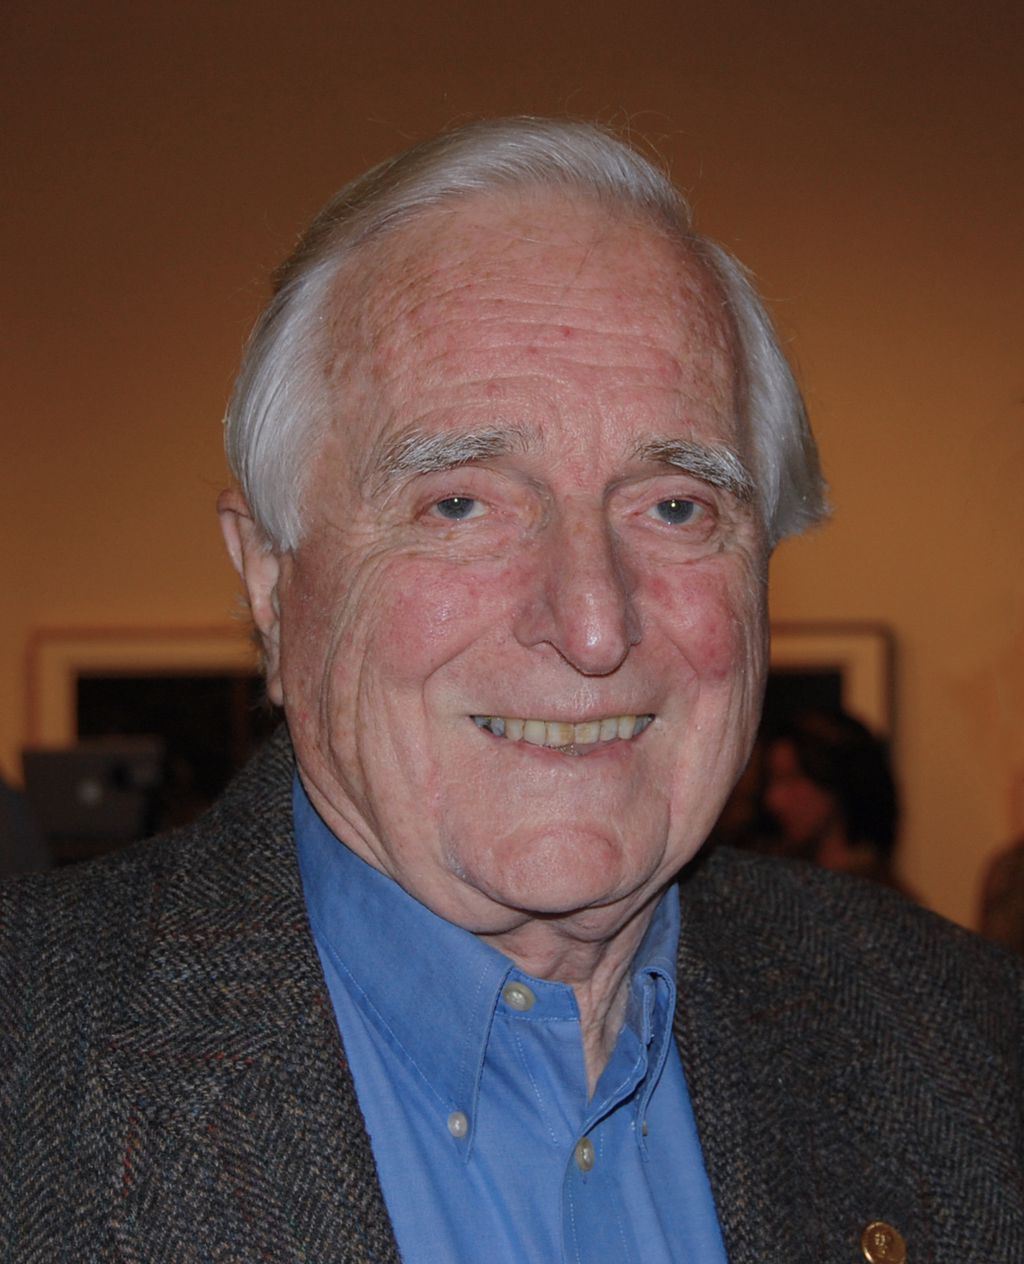 Douglas Engelbart, em 2008: o engenheiro, pesquisador e inventor foi o precursor da miniaturização da informática, levando o mundo à computação moderna atual. Ele faleceu em 2013, aos 88 anos, de falência renal (Foto: Alex Handy/Flickr)